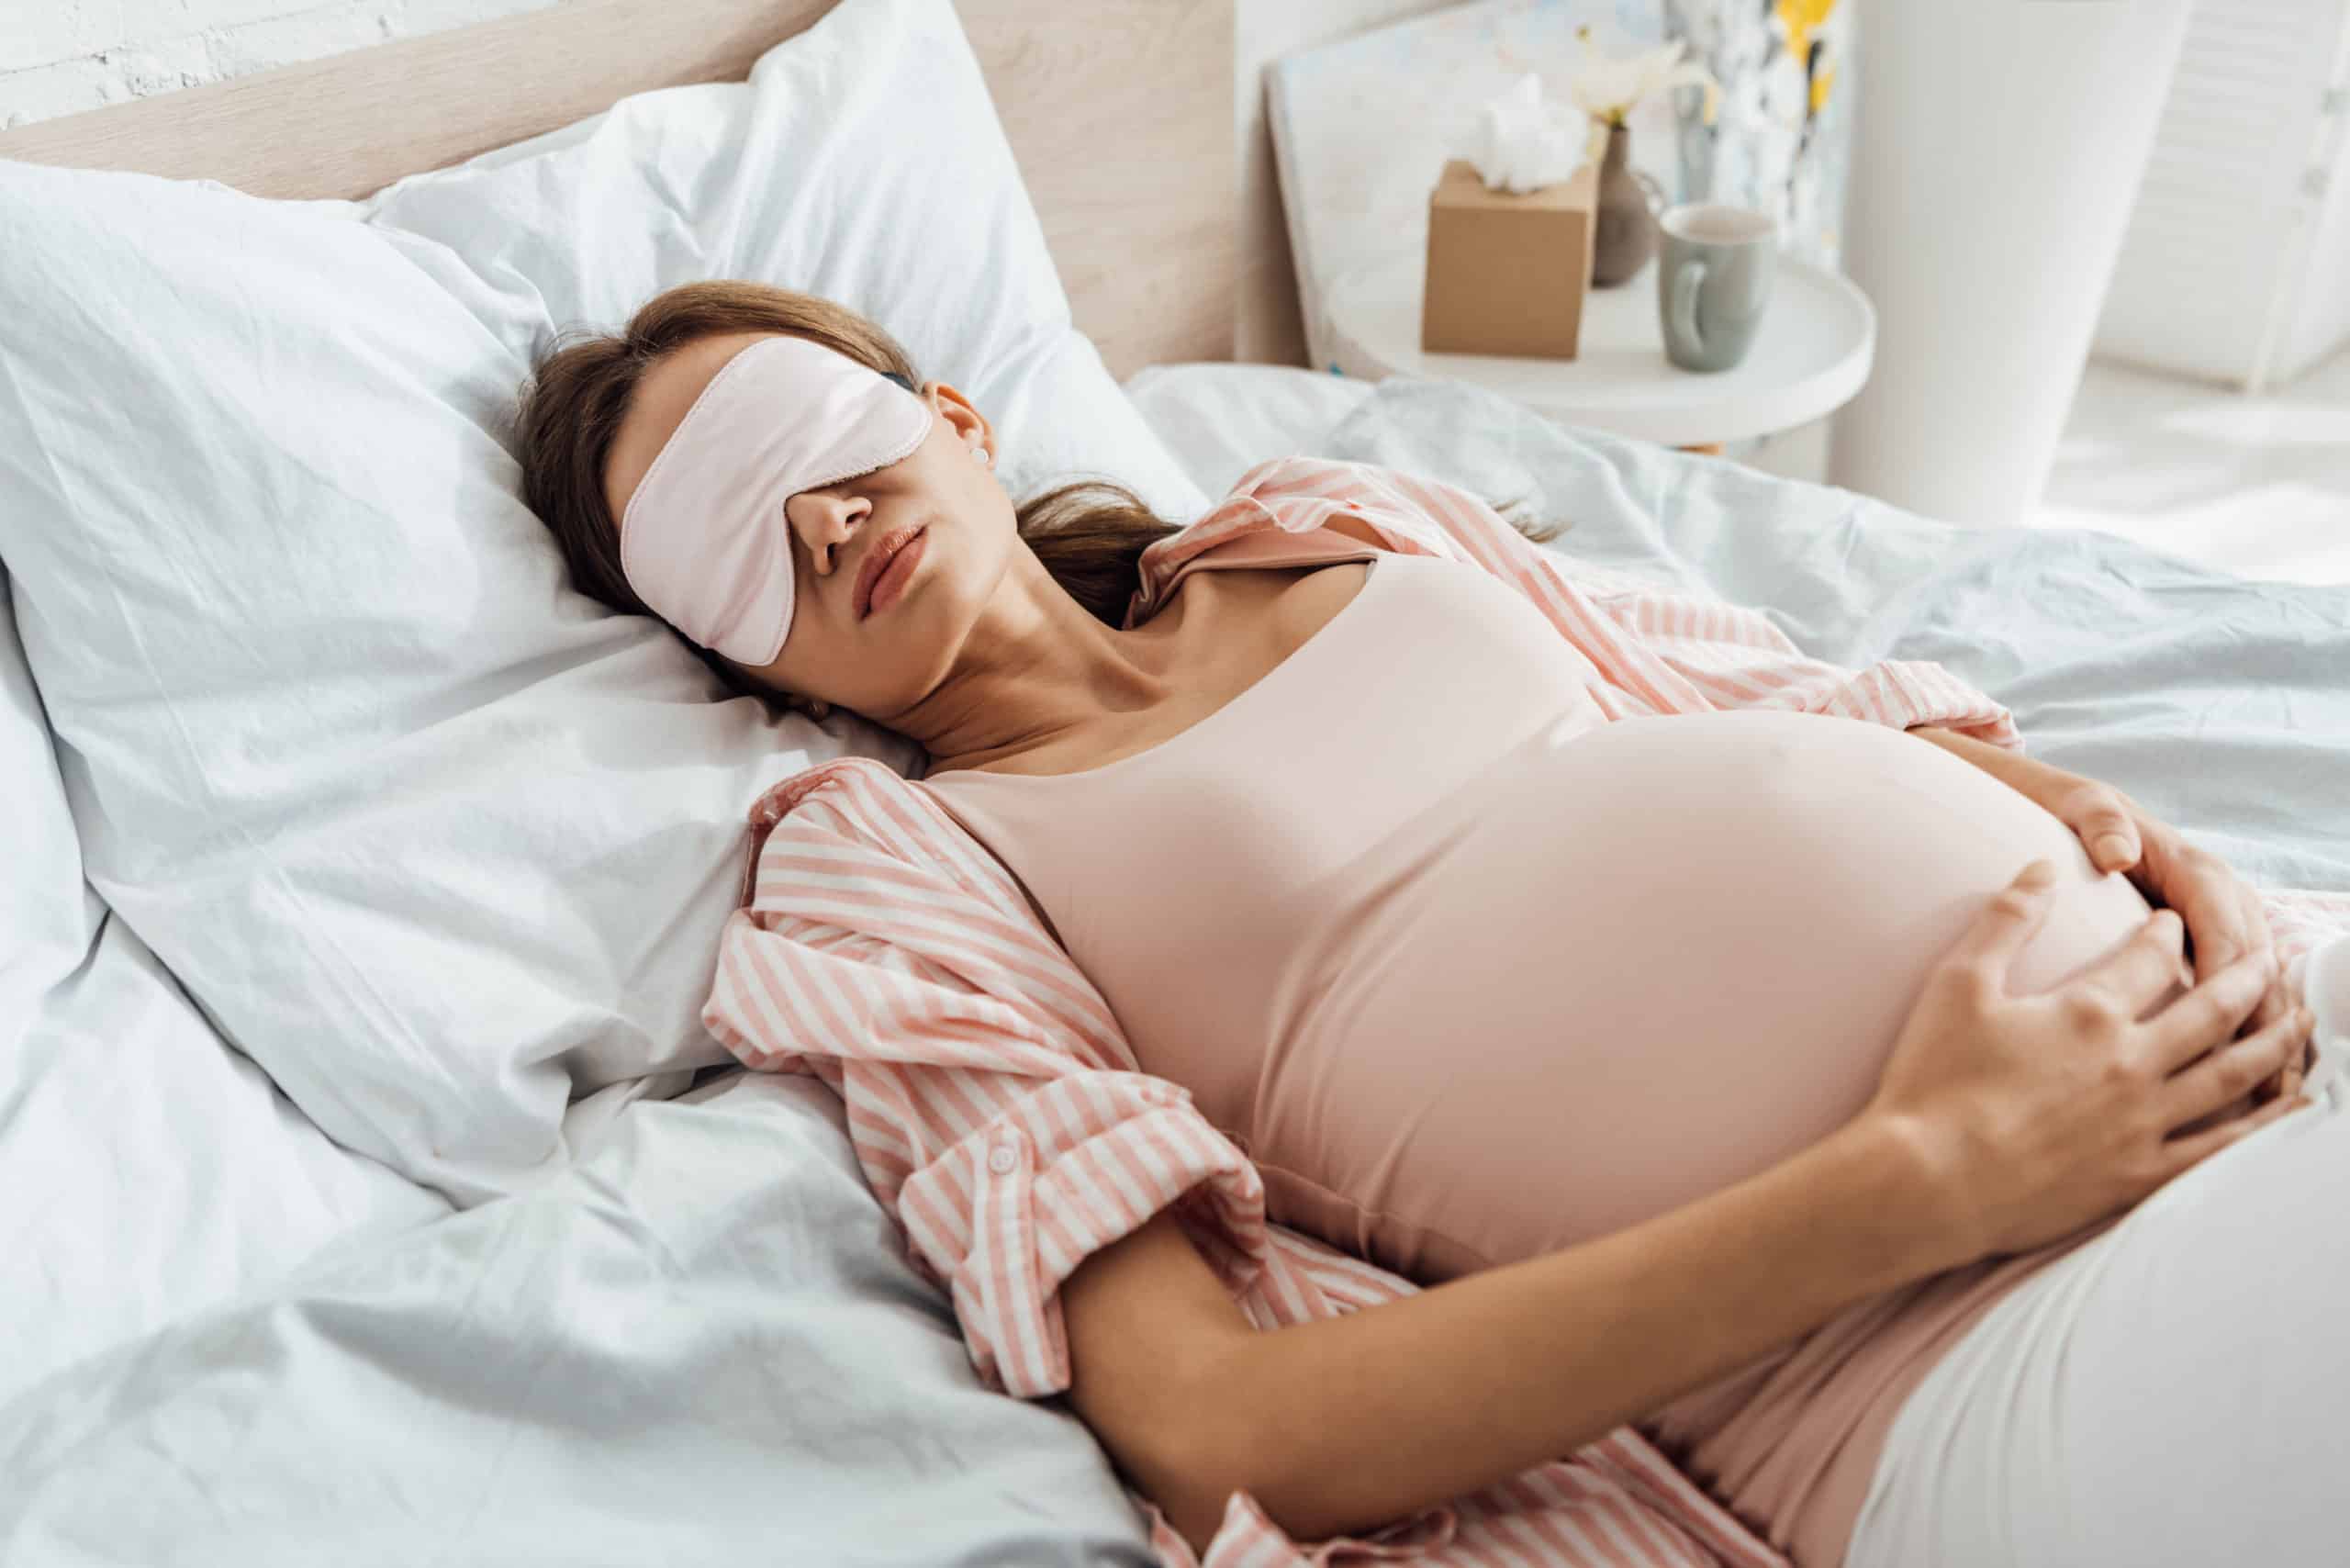 К чему снится беременной роды во сне